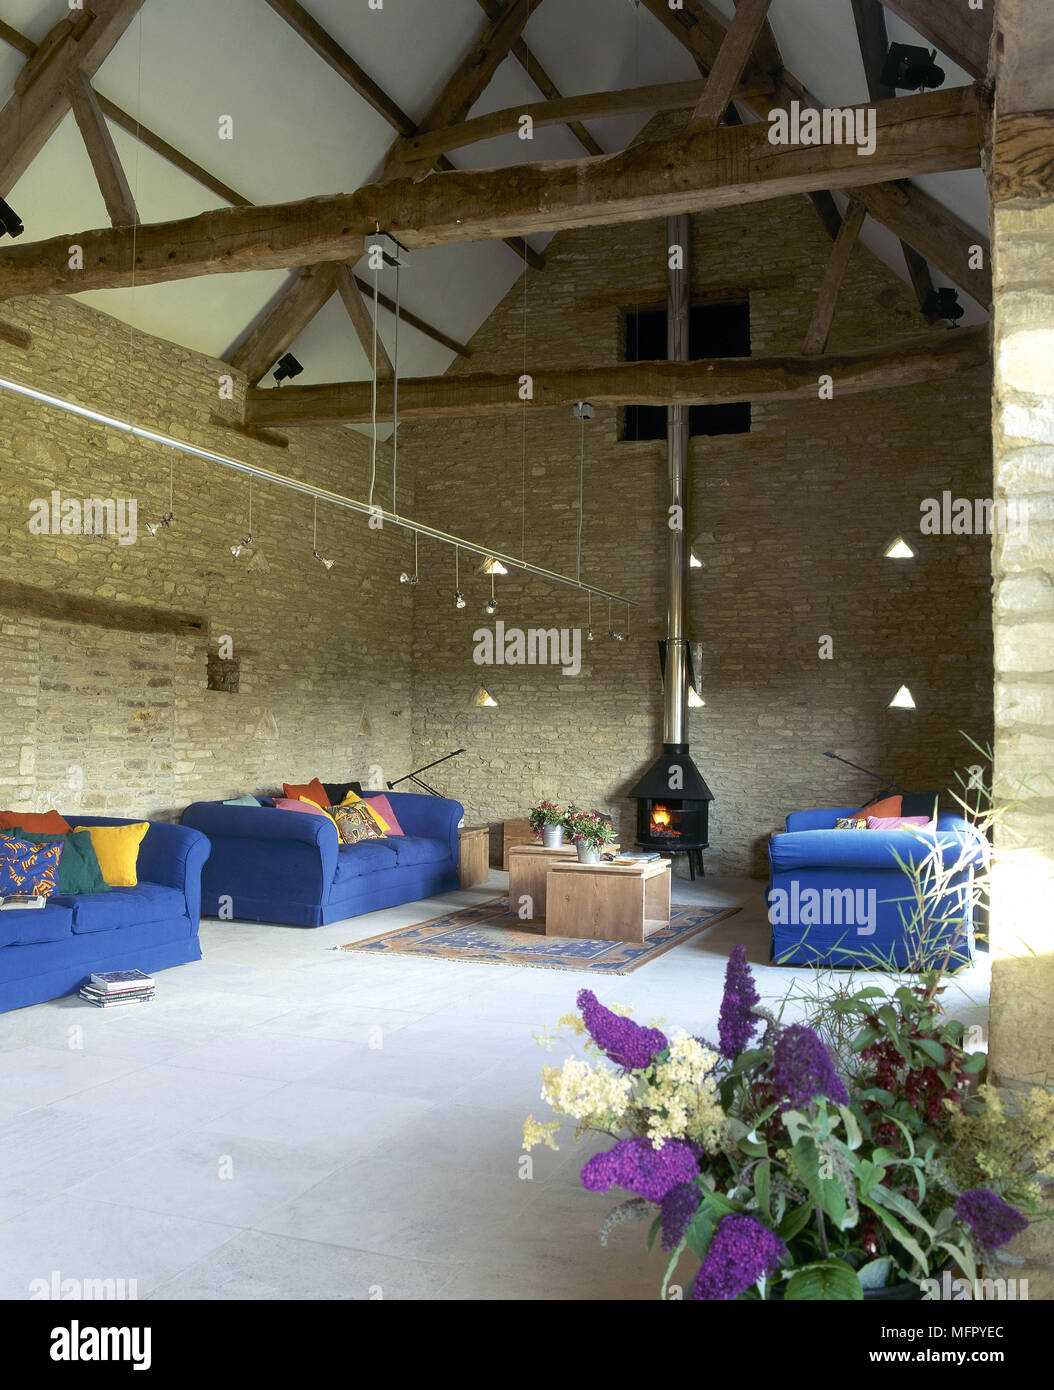 La stanza di seduta in un convertito fienile in pietra con un pavimento piastrellato, esposto a capriate, lit stufa a legna, divani imbottiti e via di illuminazione. Foto Stock